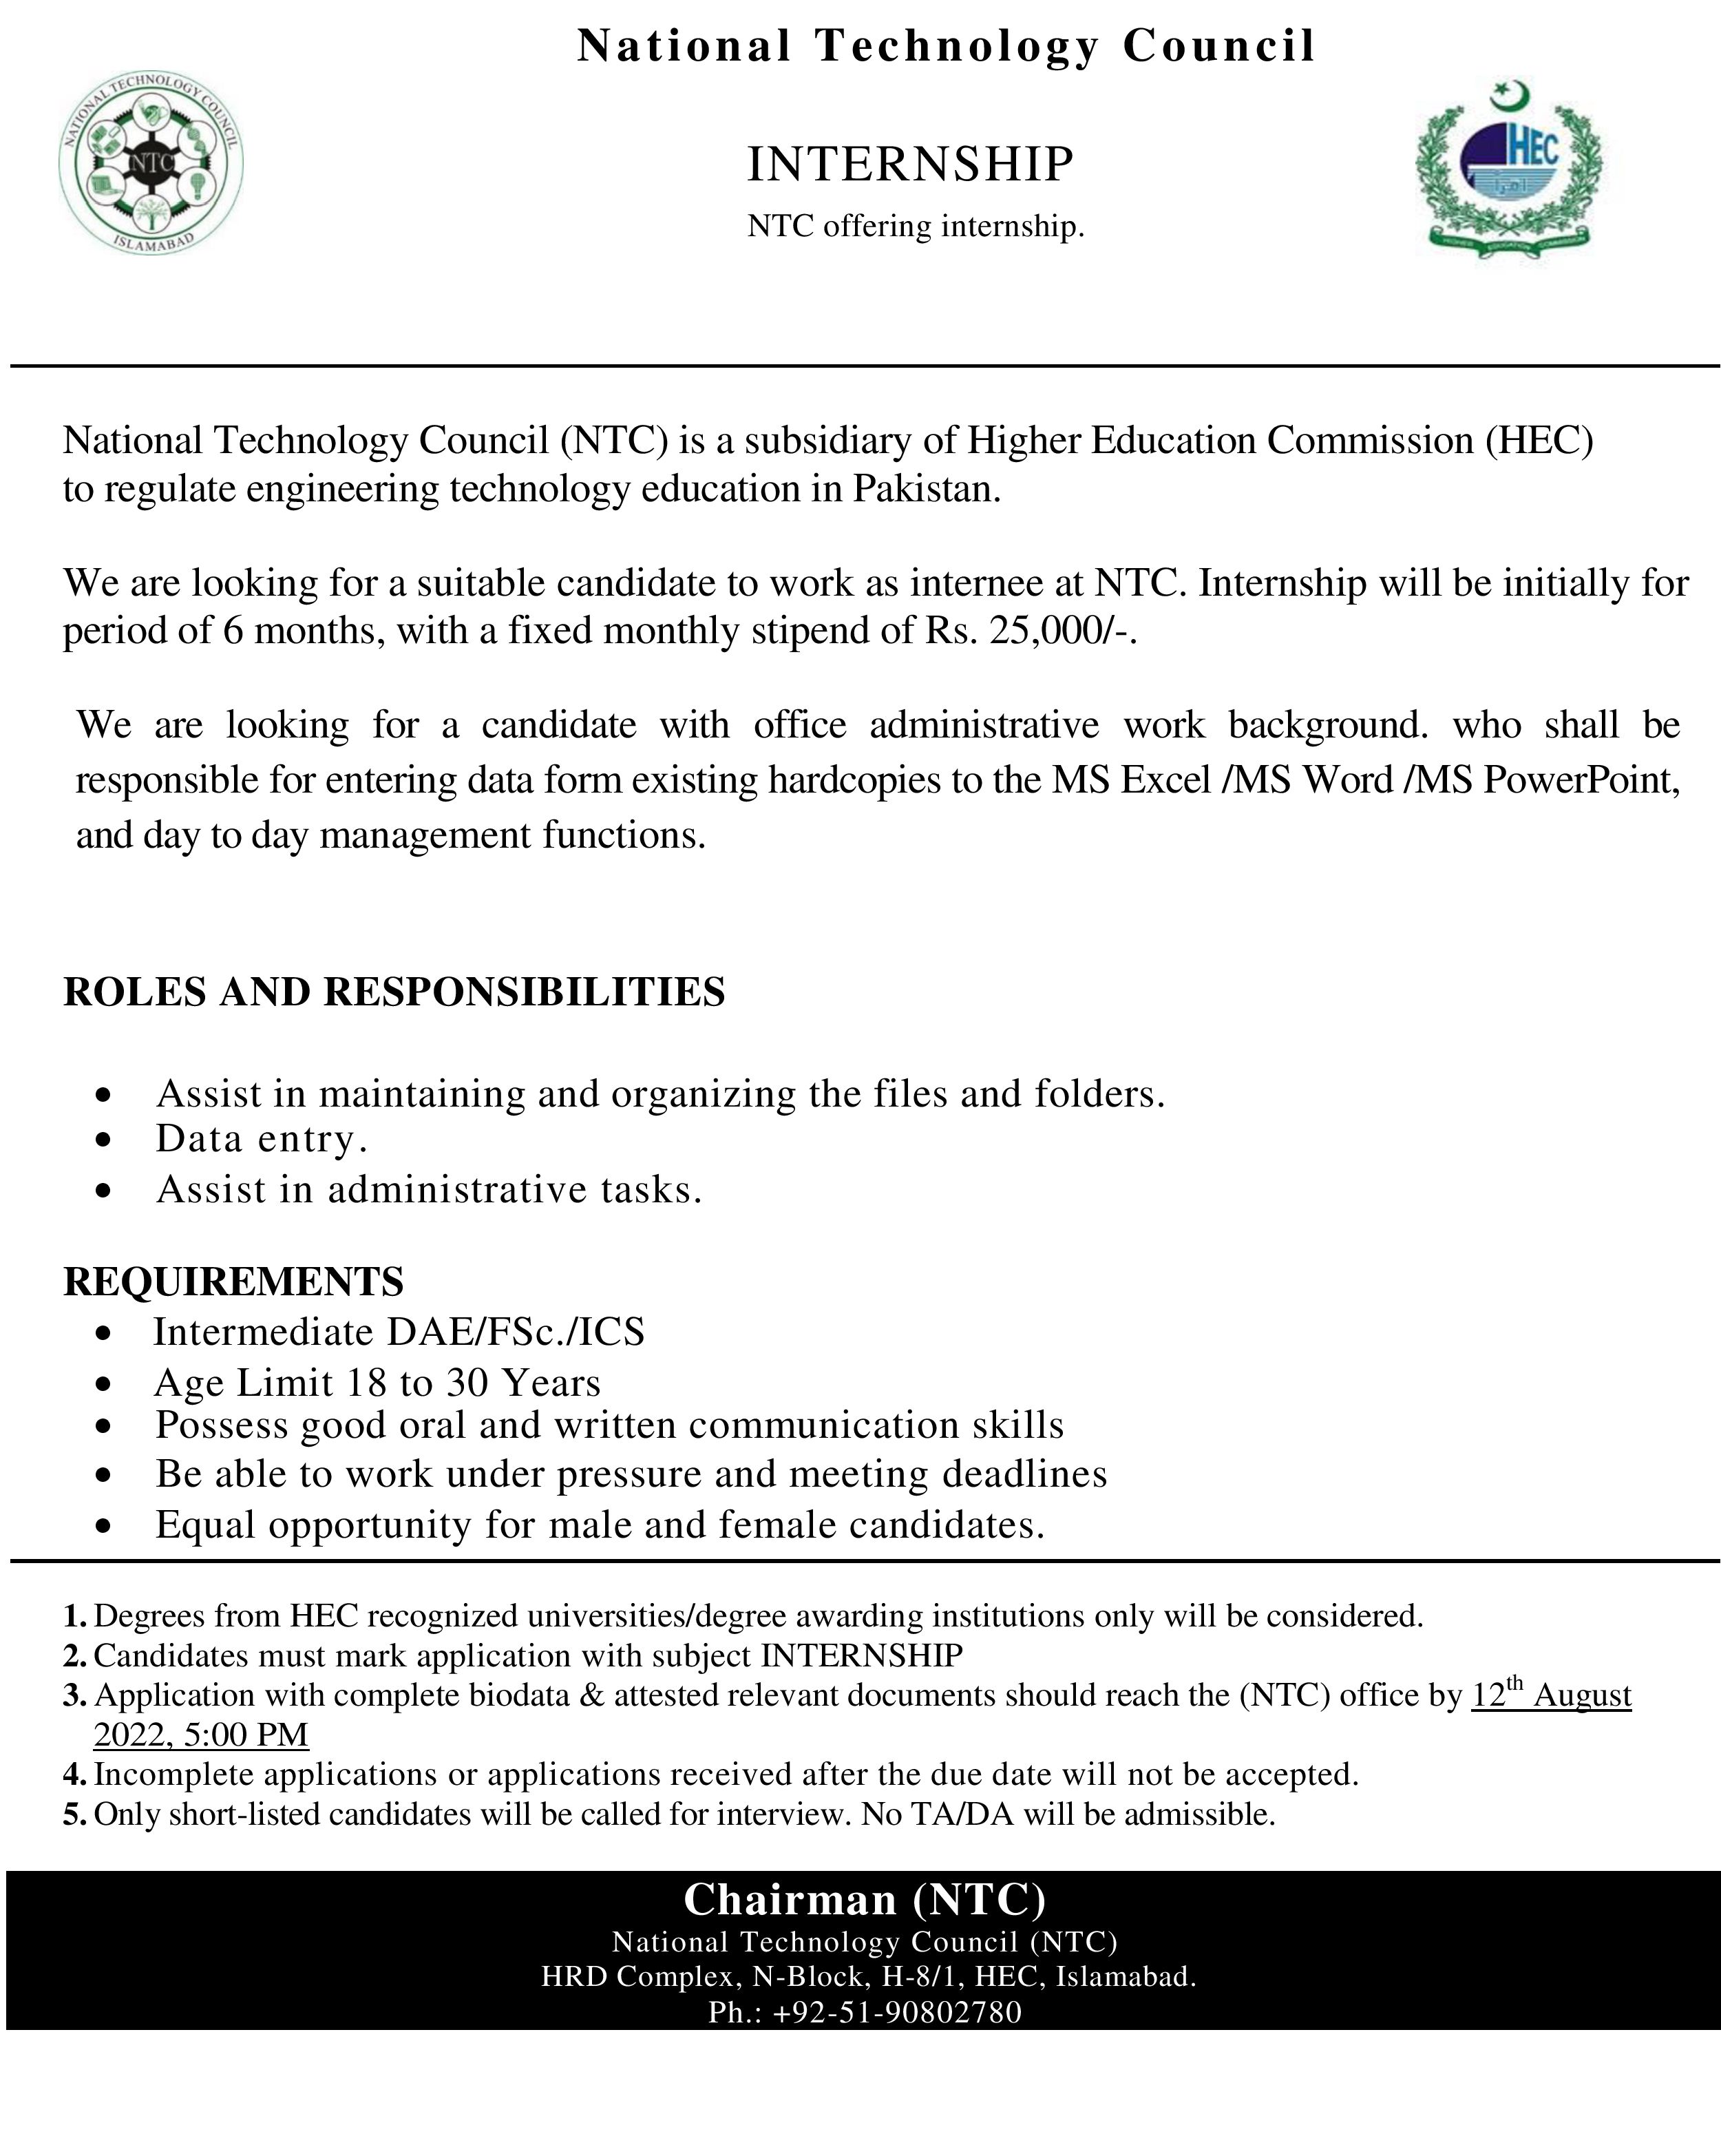 NTC offering internship 2022.jpg
